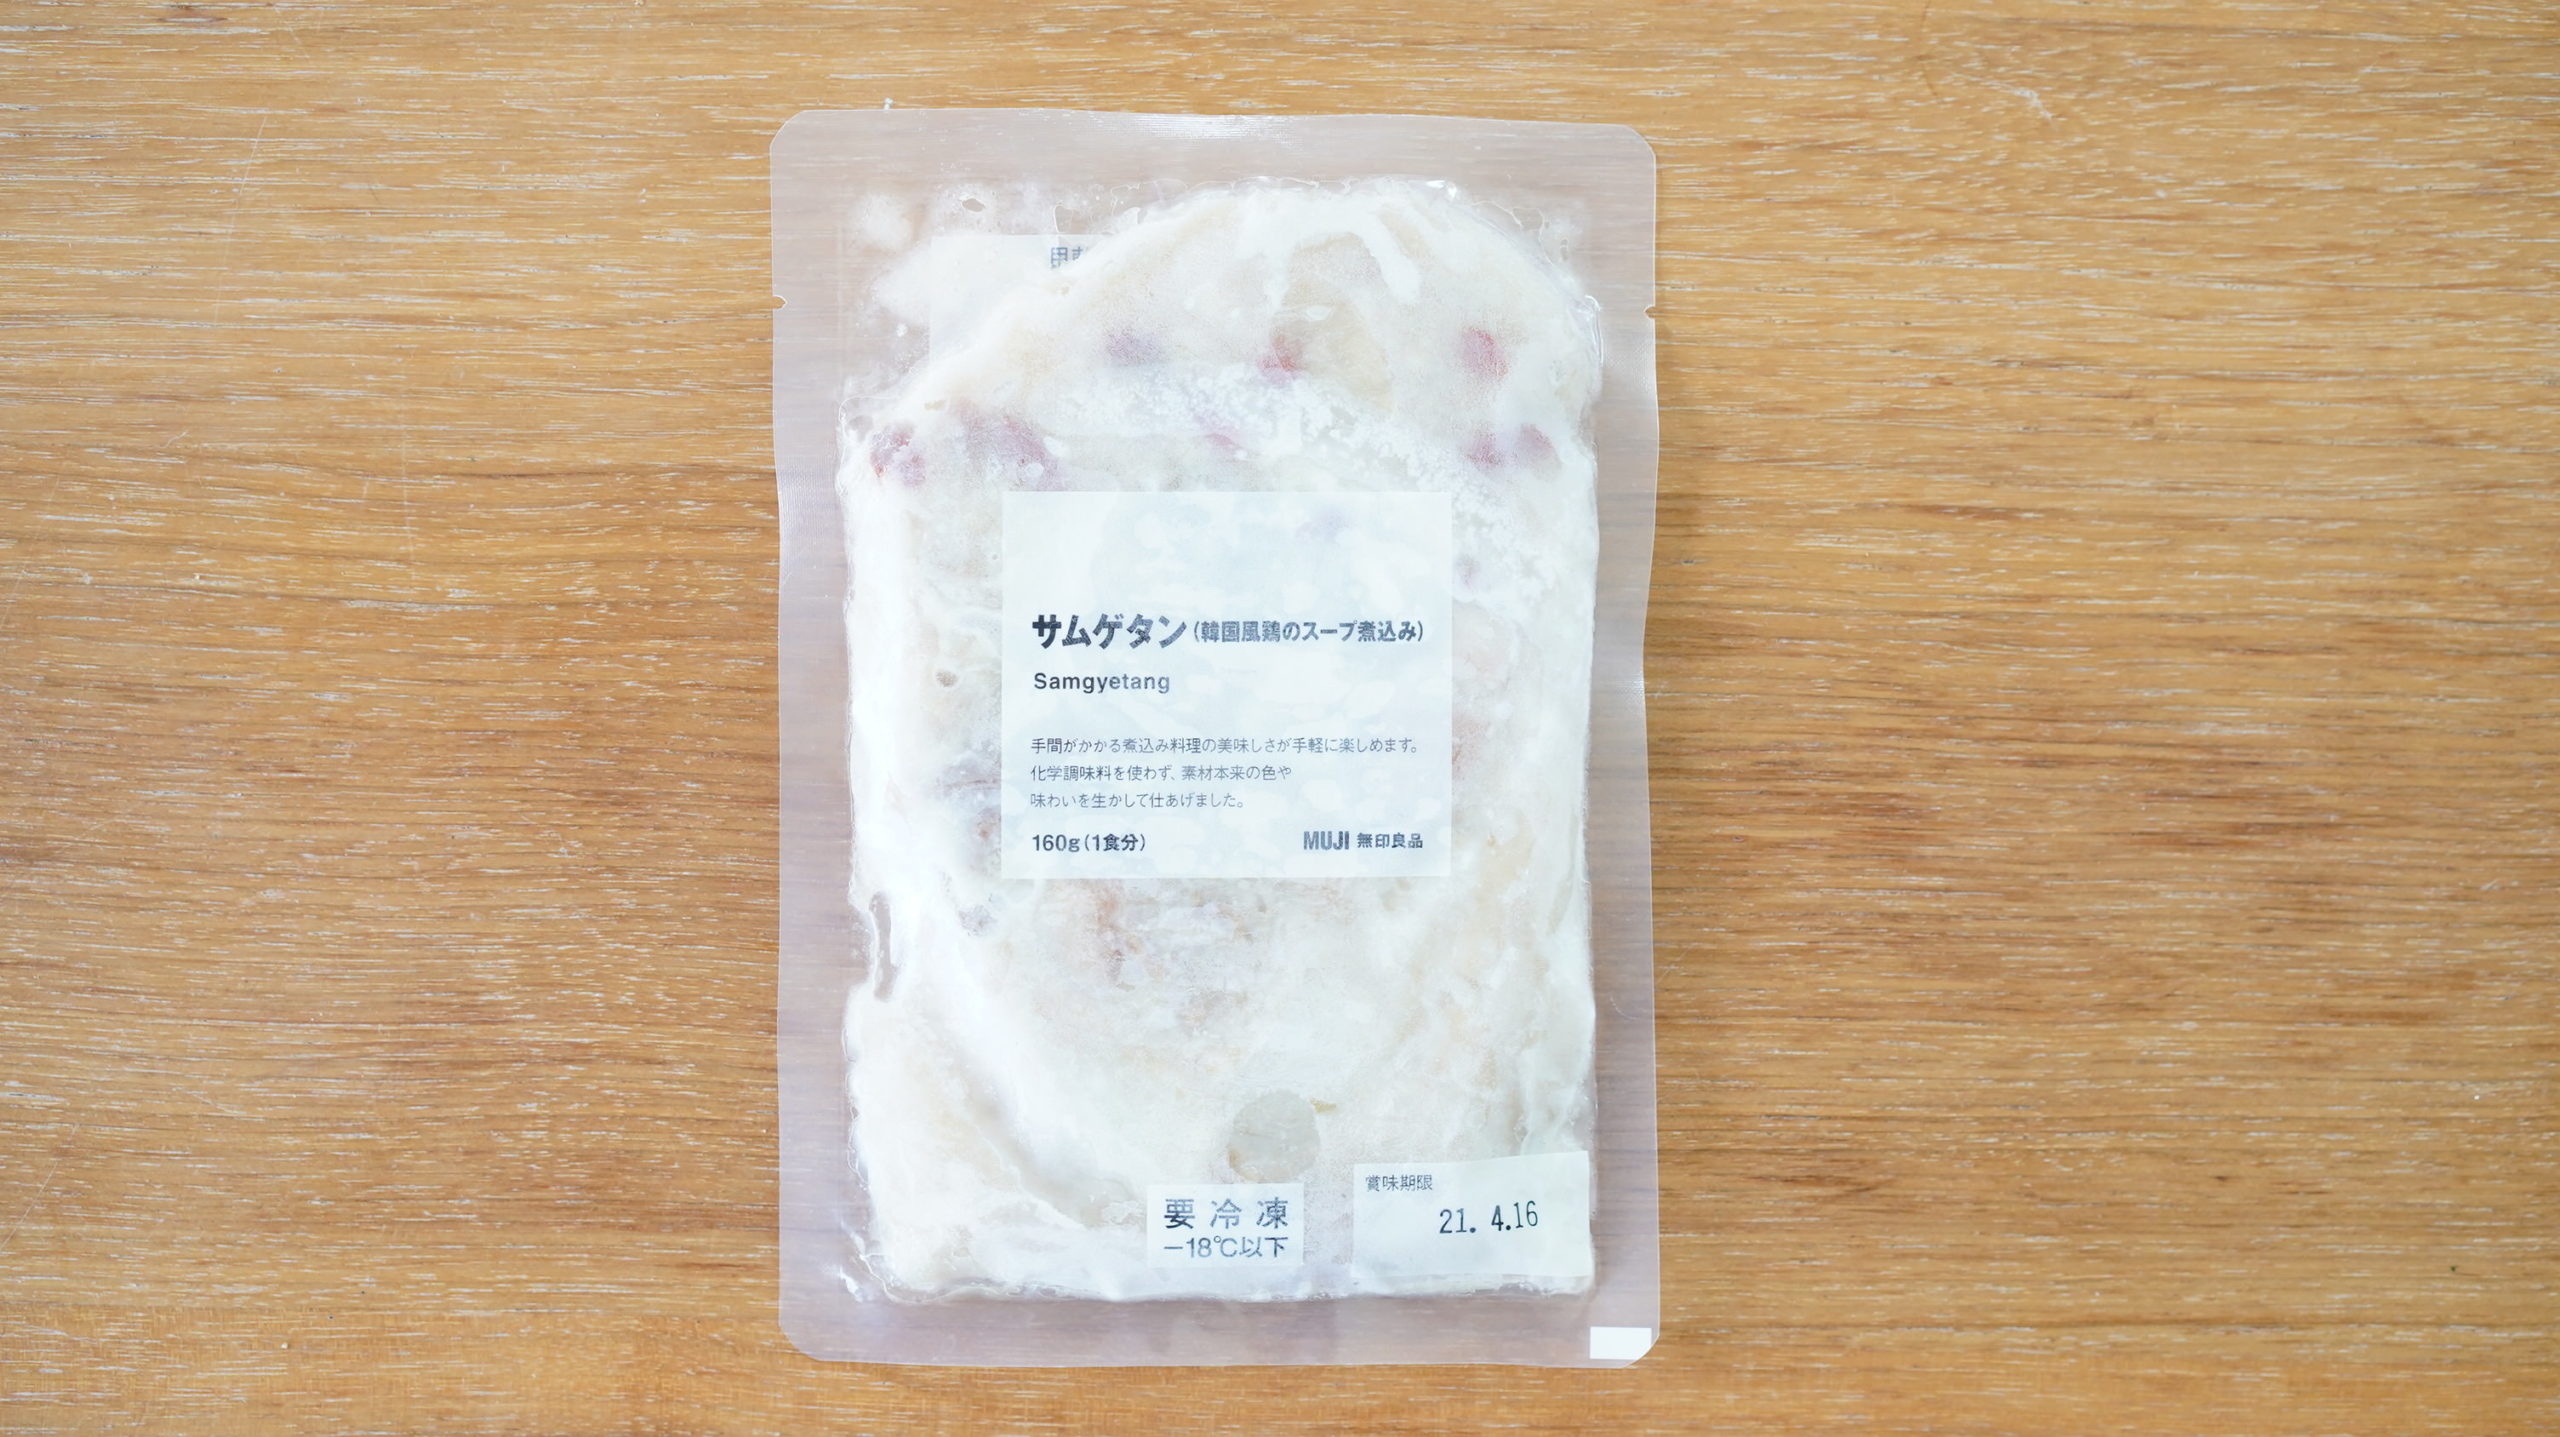 無印良品のおすすめ冷凍食品「サムゲタン（韓国風鶏のスープ煮込み）」のパッケージの写真